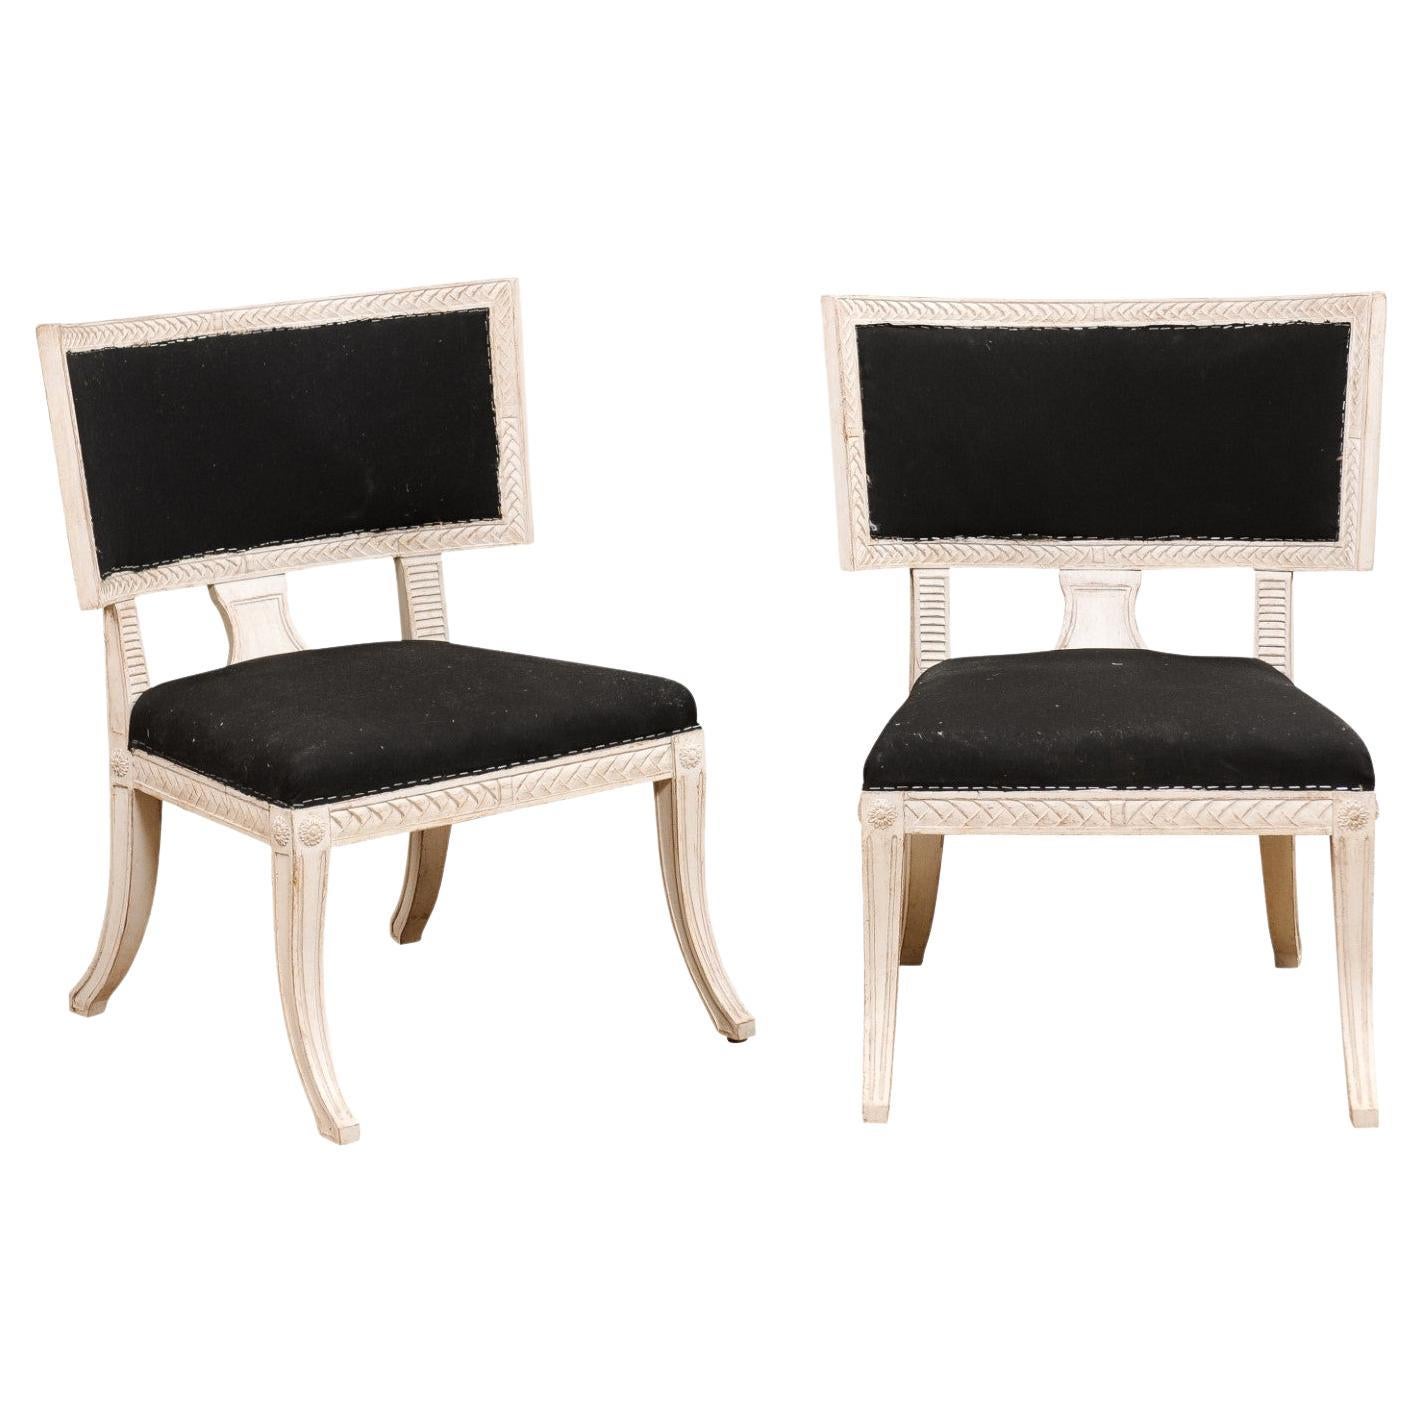 Paire de chaises d'appoint de style néoclassique suédois Klismos peintes et sculptées